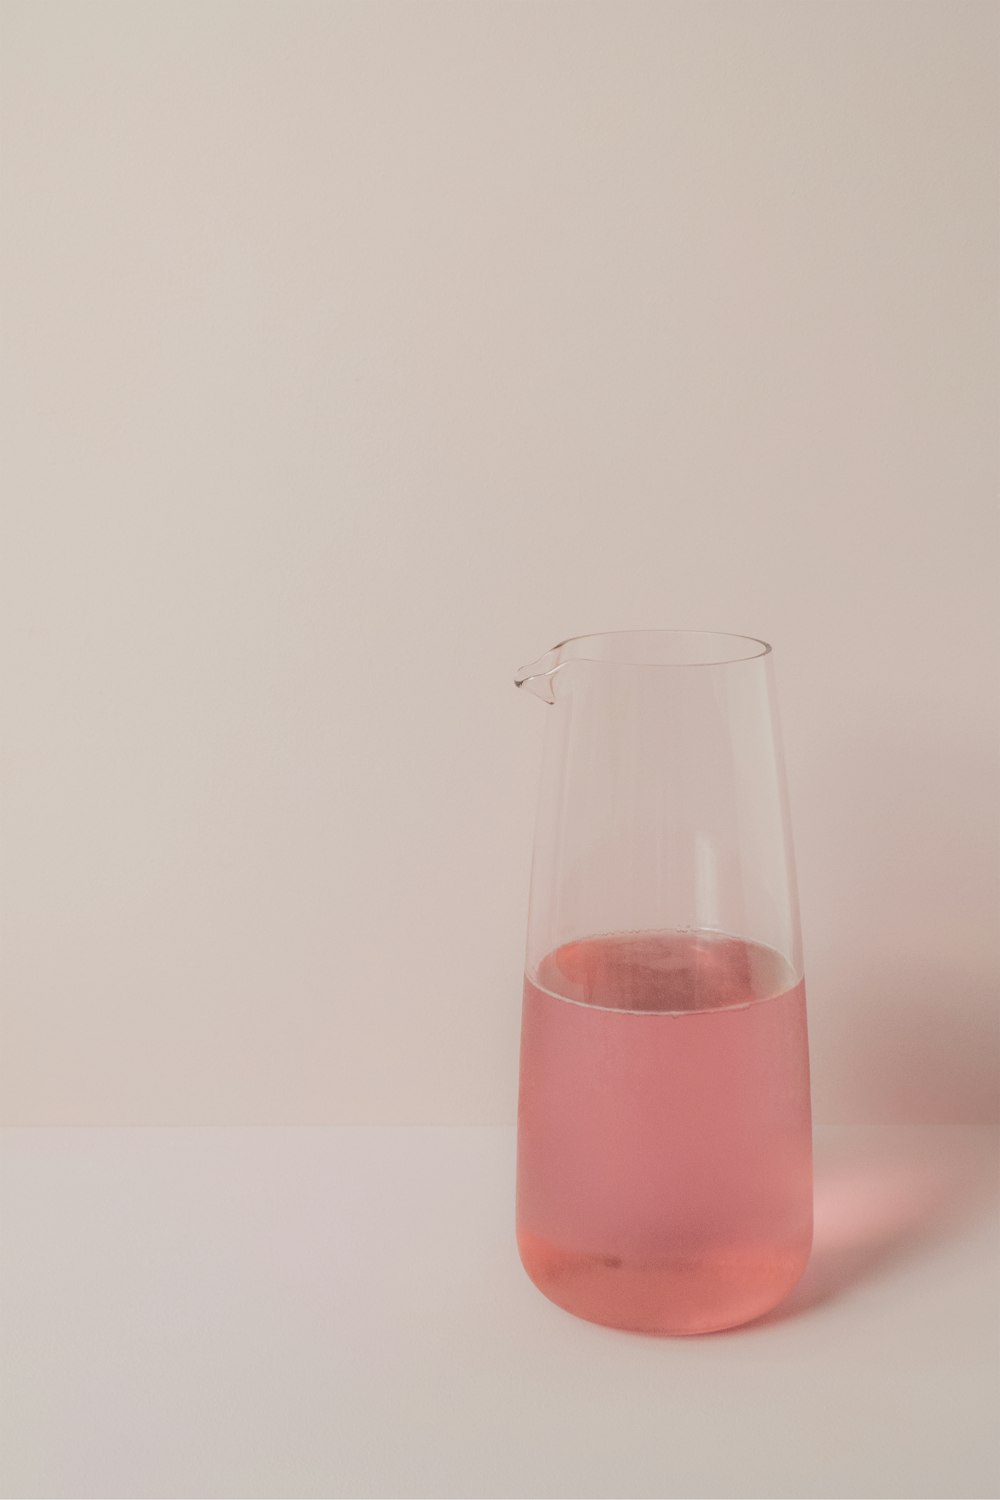 Un liquide rose est dans un vase en verre